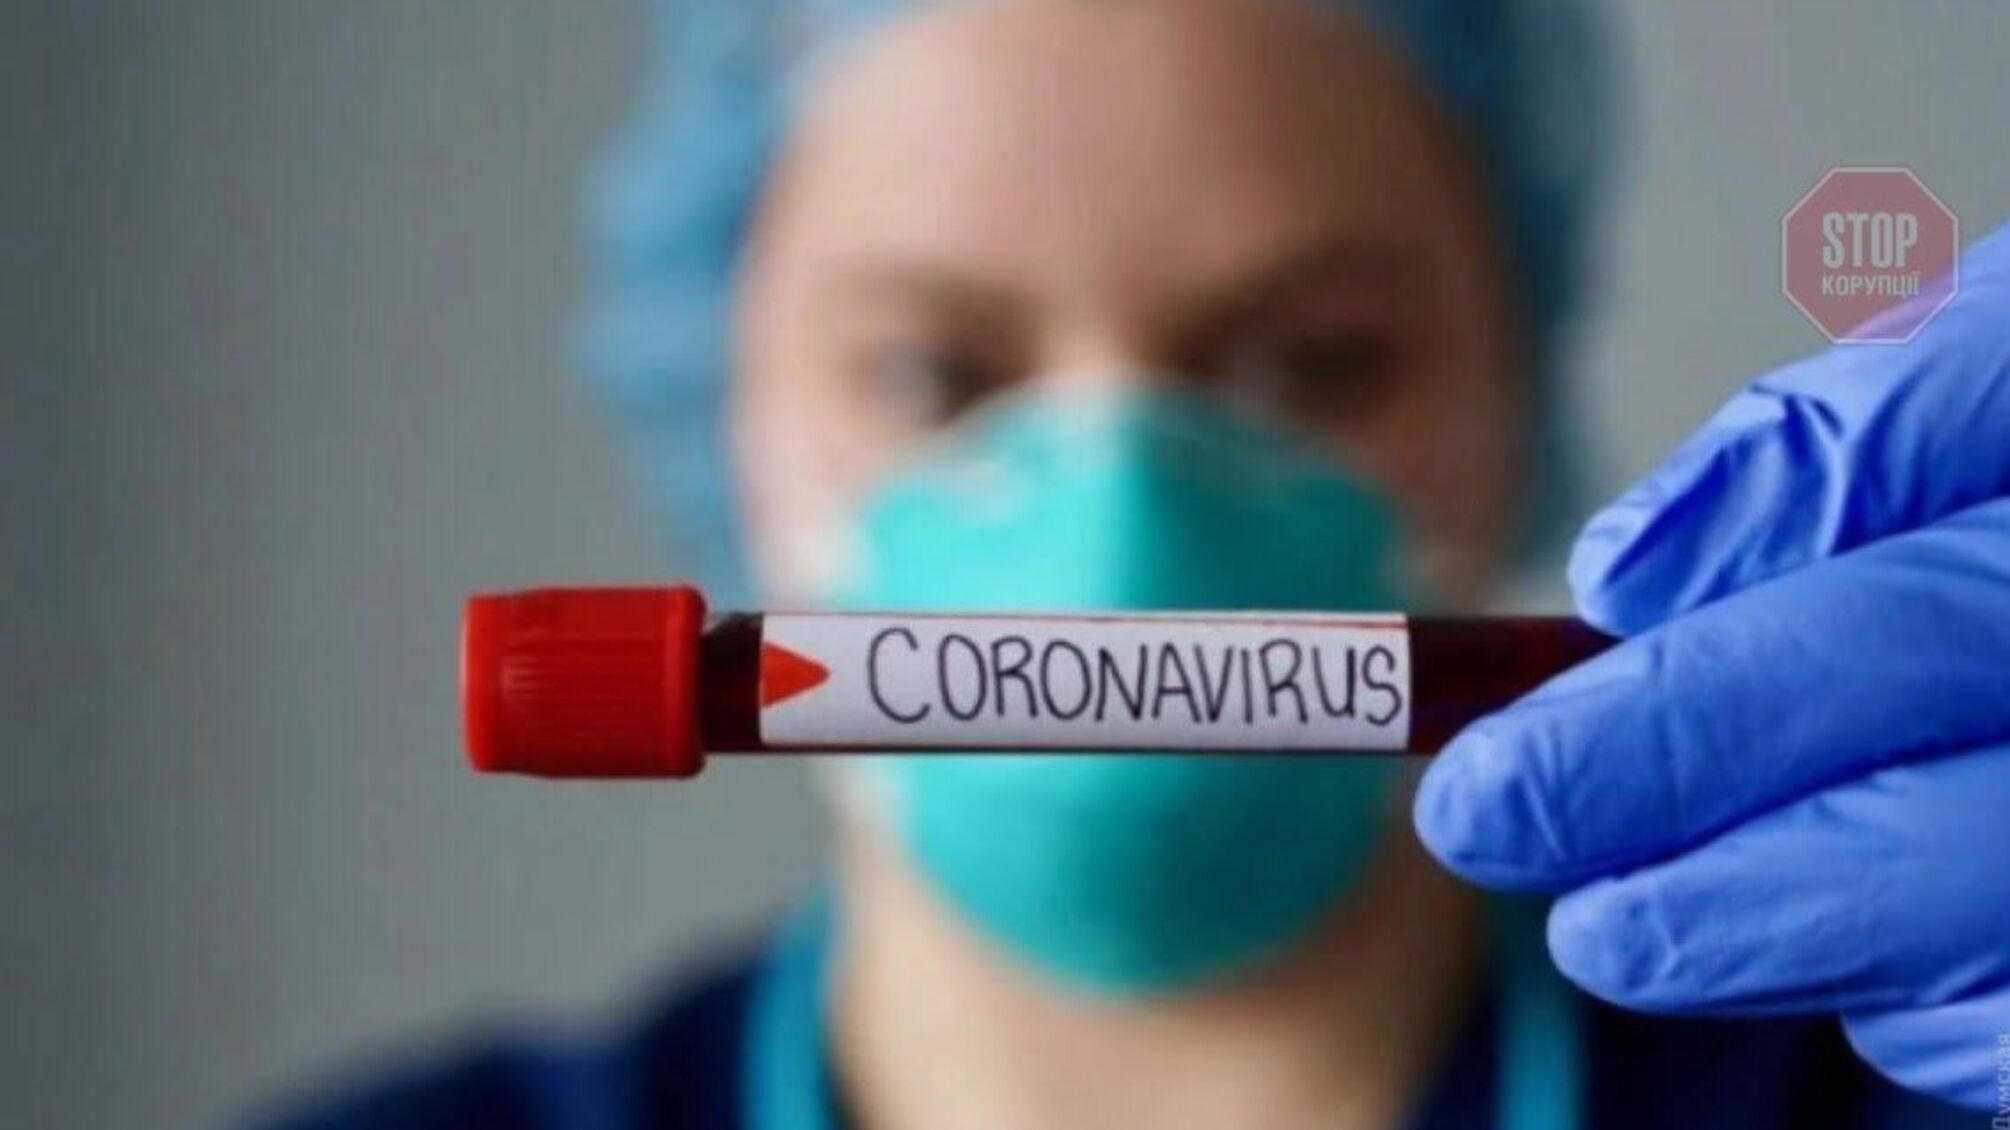 Во всем мире было зарегистрировано 93 миллиона случаев COVID-19